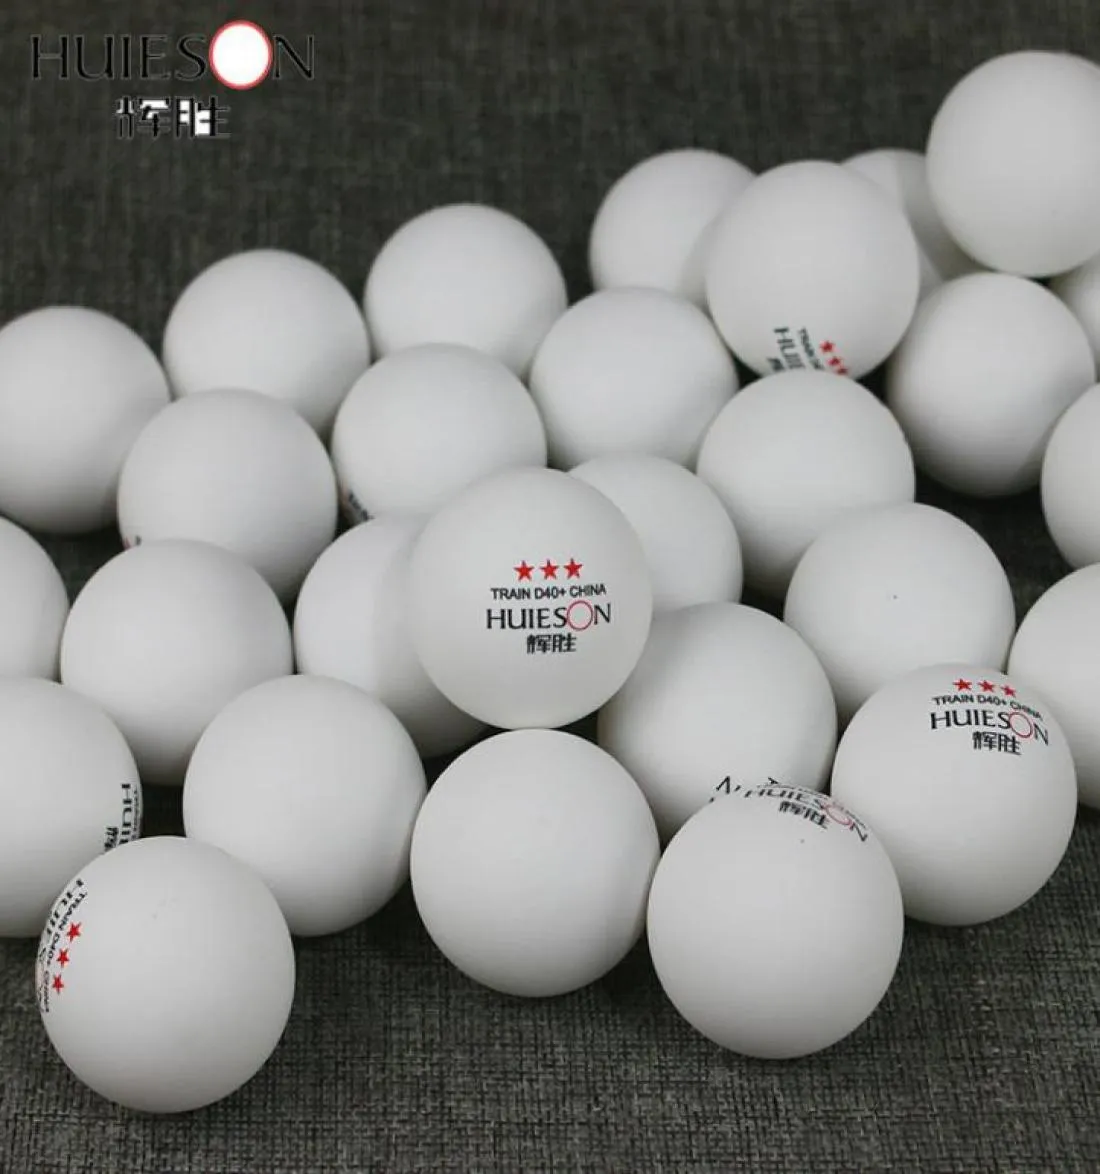 Huieson 100 шт. 3 звезды 40 мм 28 г Мячи для настольного тенниса Мячи для пинг-понга для матча Новый материал АБС-пластик Мячи для настольных тренировок T190928013782